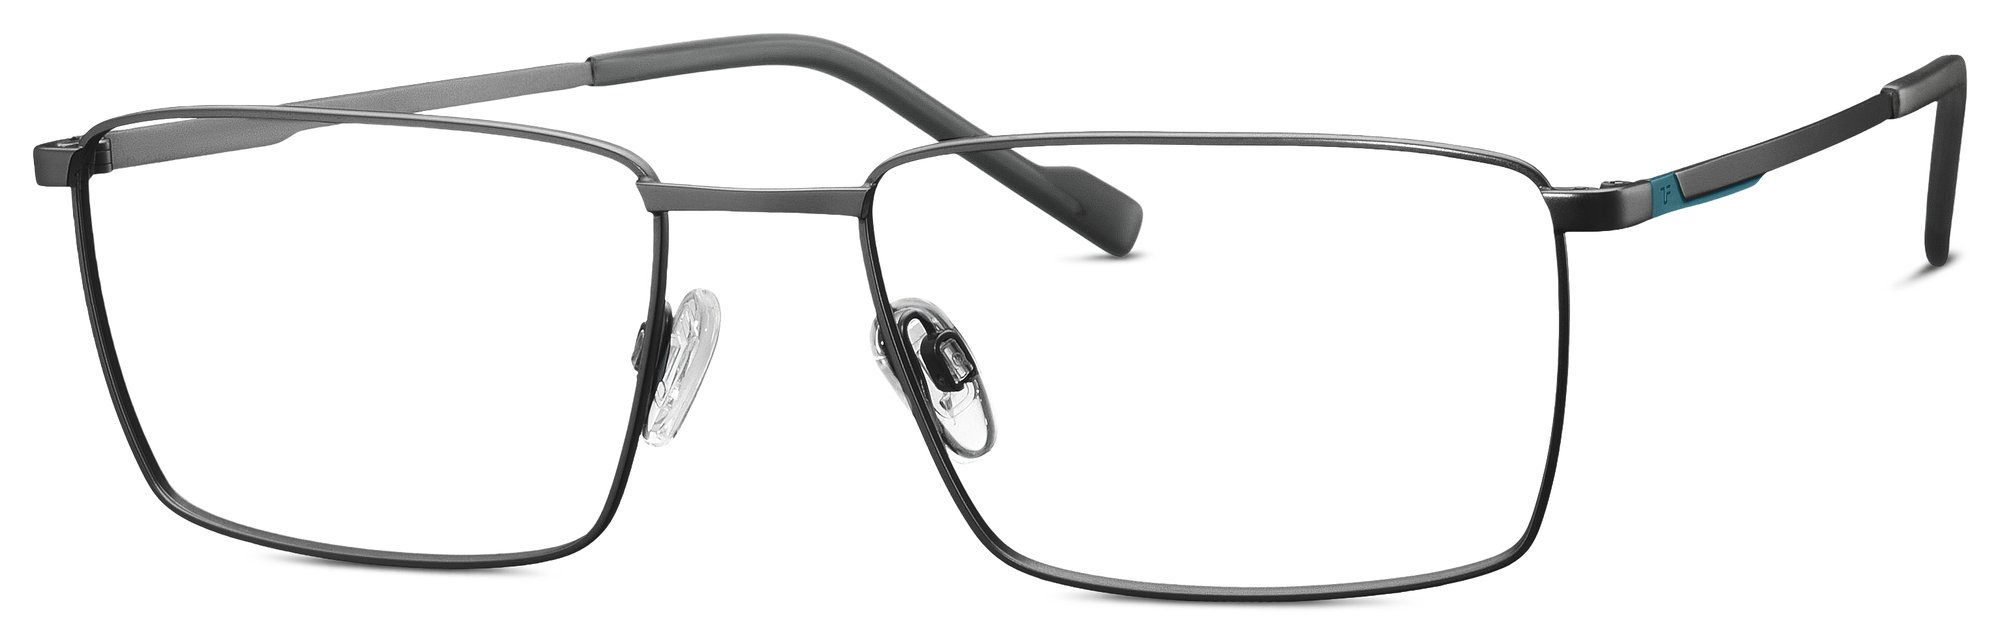 Das Bild zeigt die Korrektionsbrille 820942 60 von der Marke Titanflex in grau.